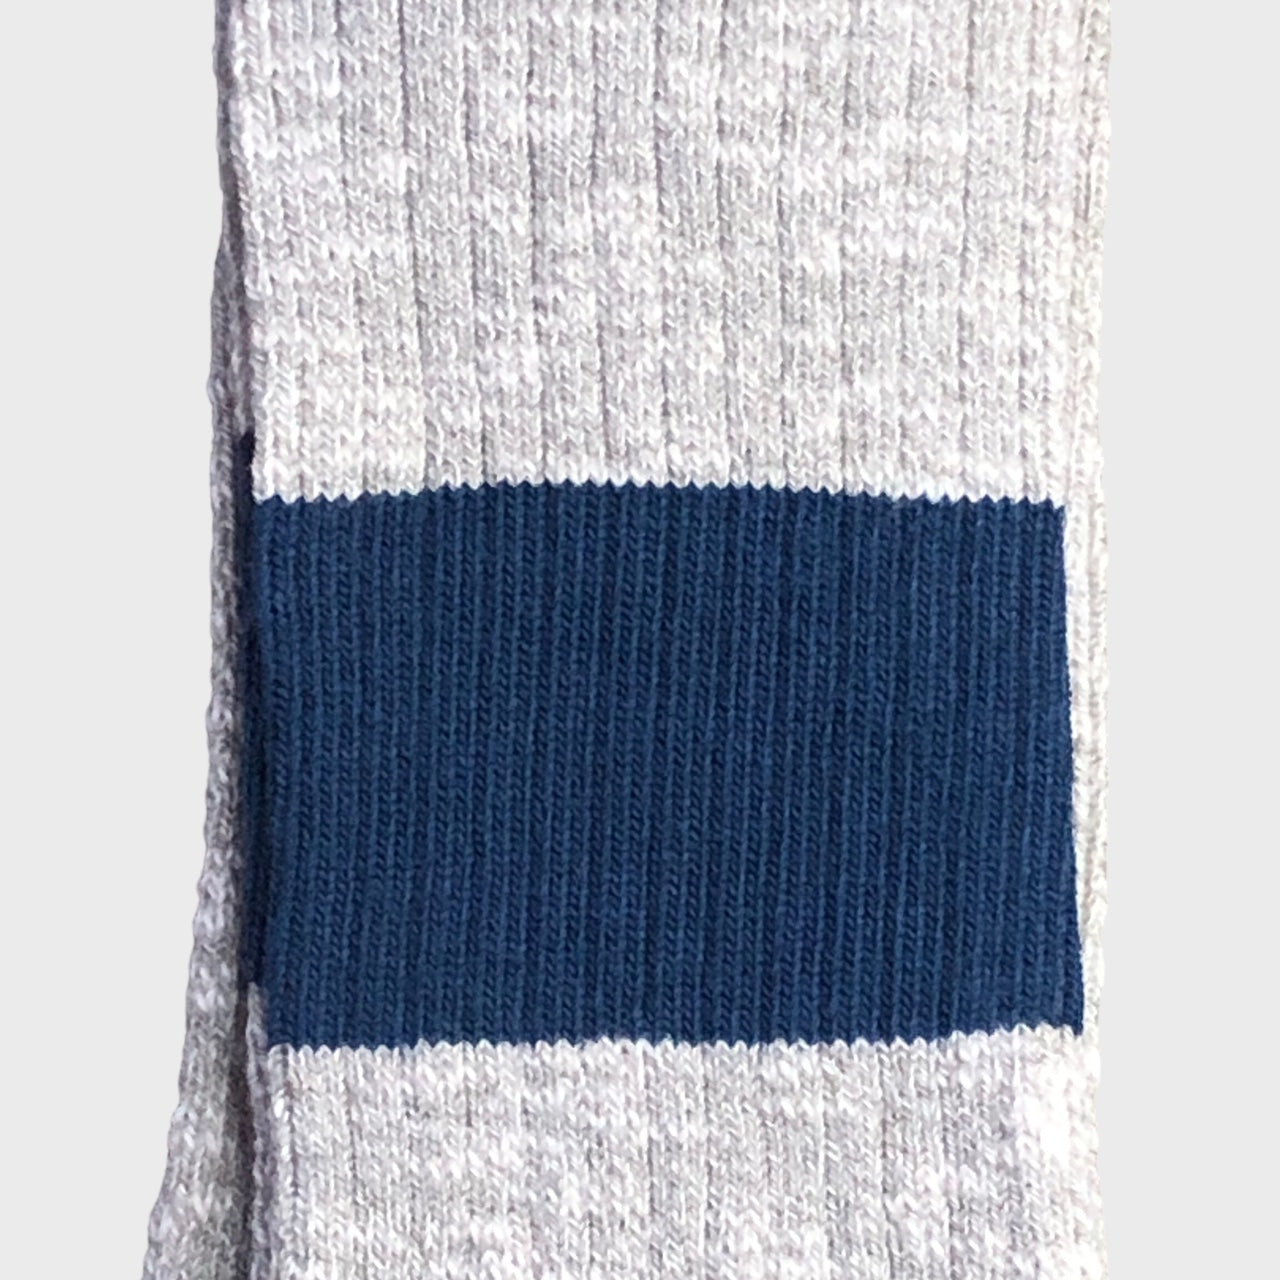 Escuyer - Melange Band Grey Ink Socks